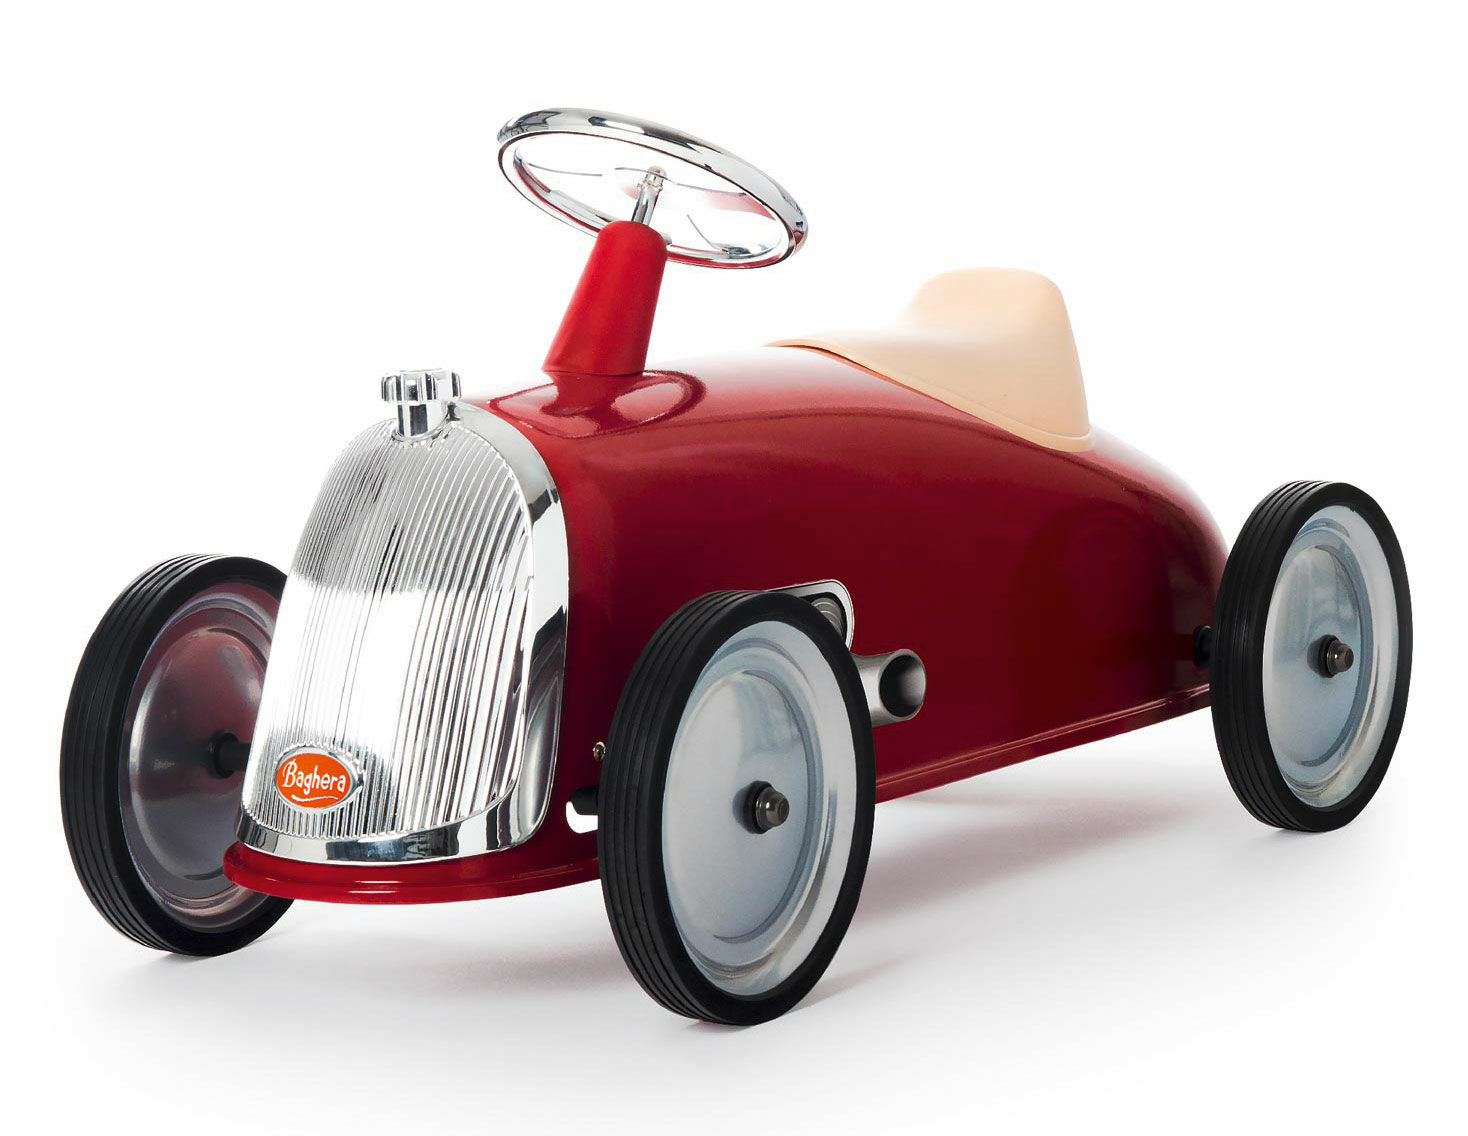 Rijden op auto "Red Rider" (voor kinderen van 2-3 jaar) von Baghera